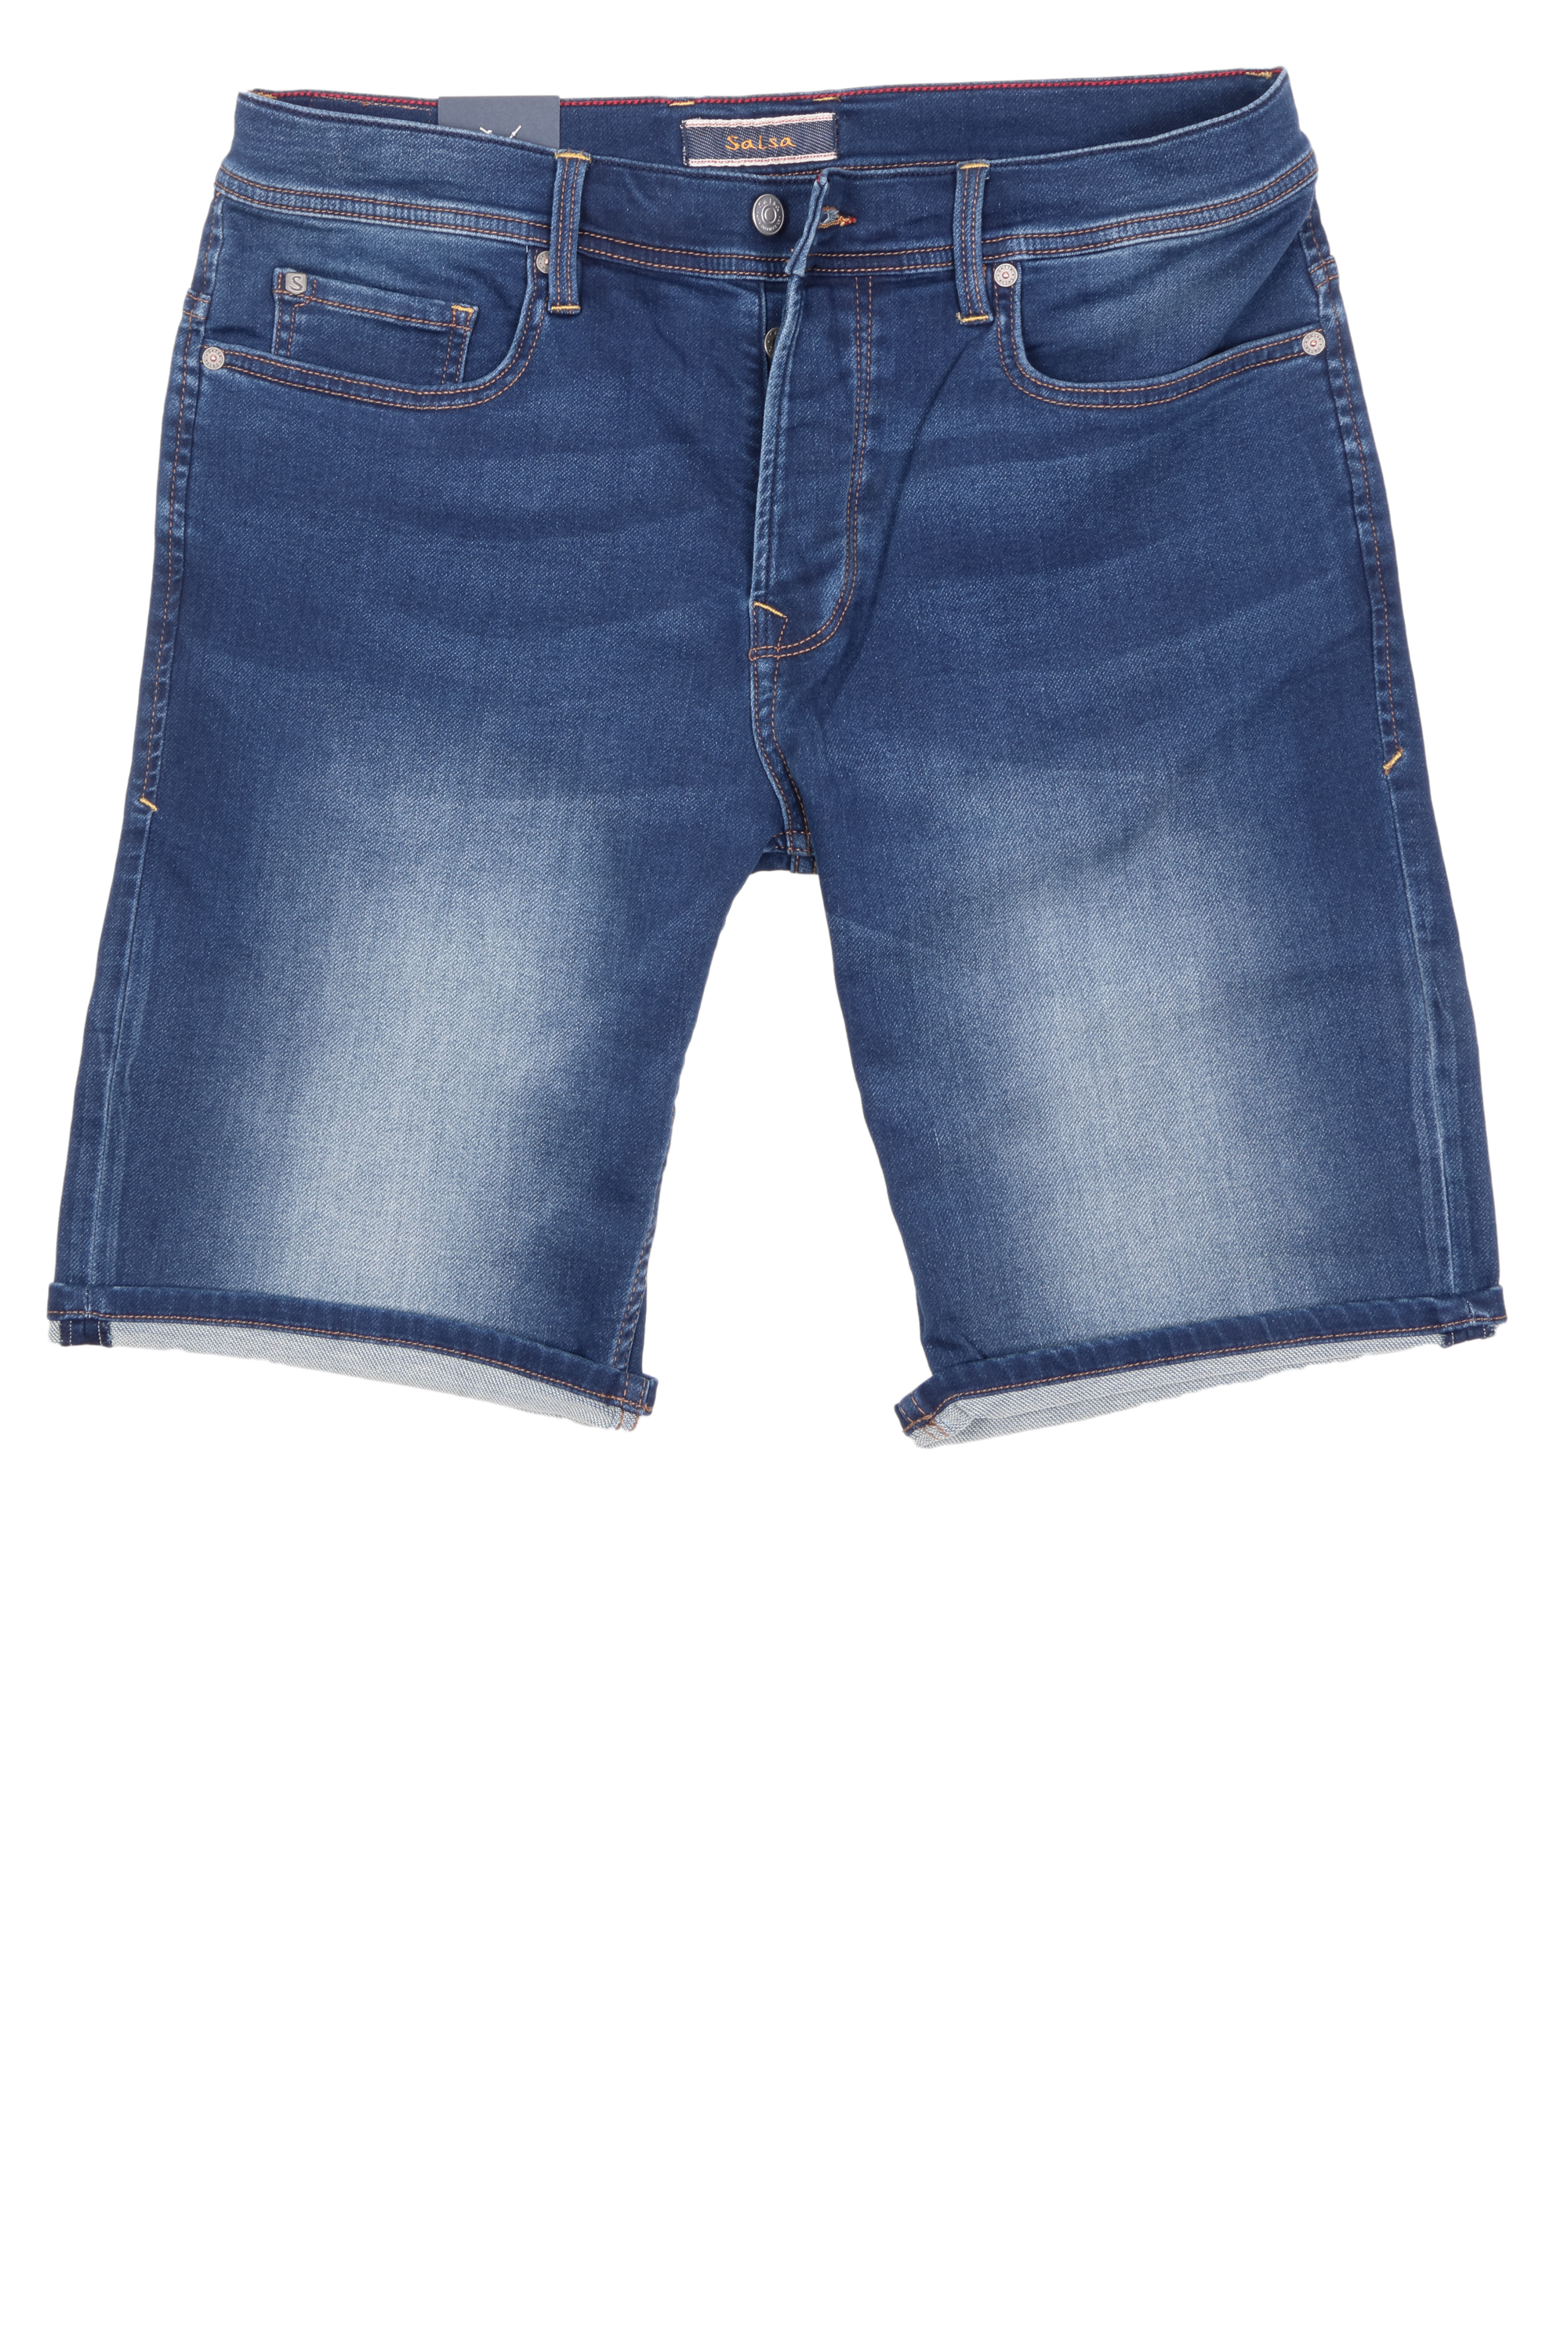 Salsa Herren Jeans Shorts Jog-Denim - blau 31